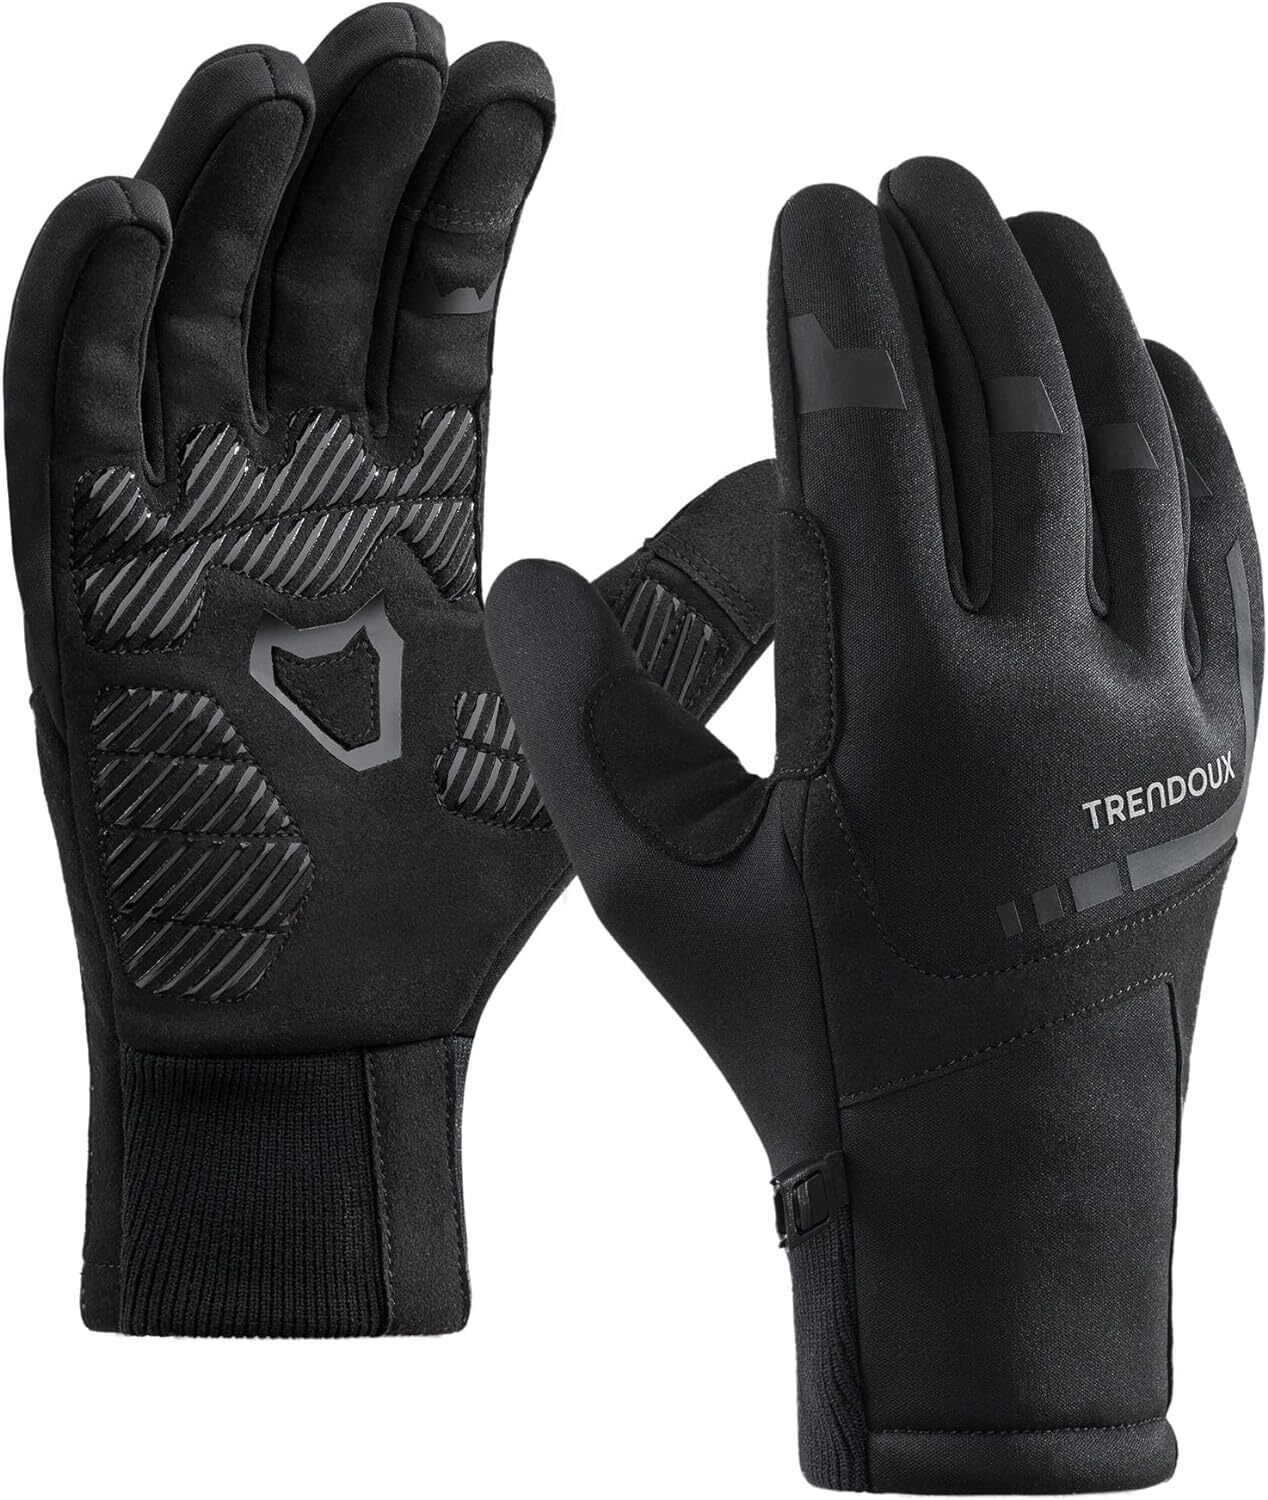 gants tactiles pour sport noirs